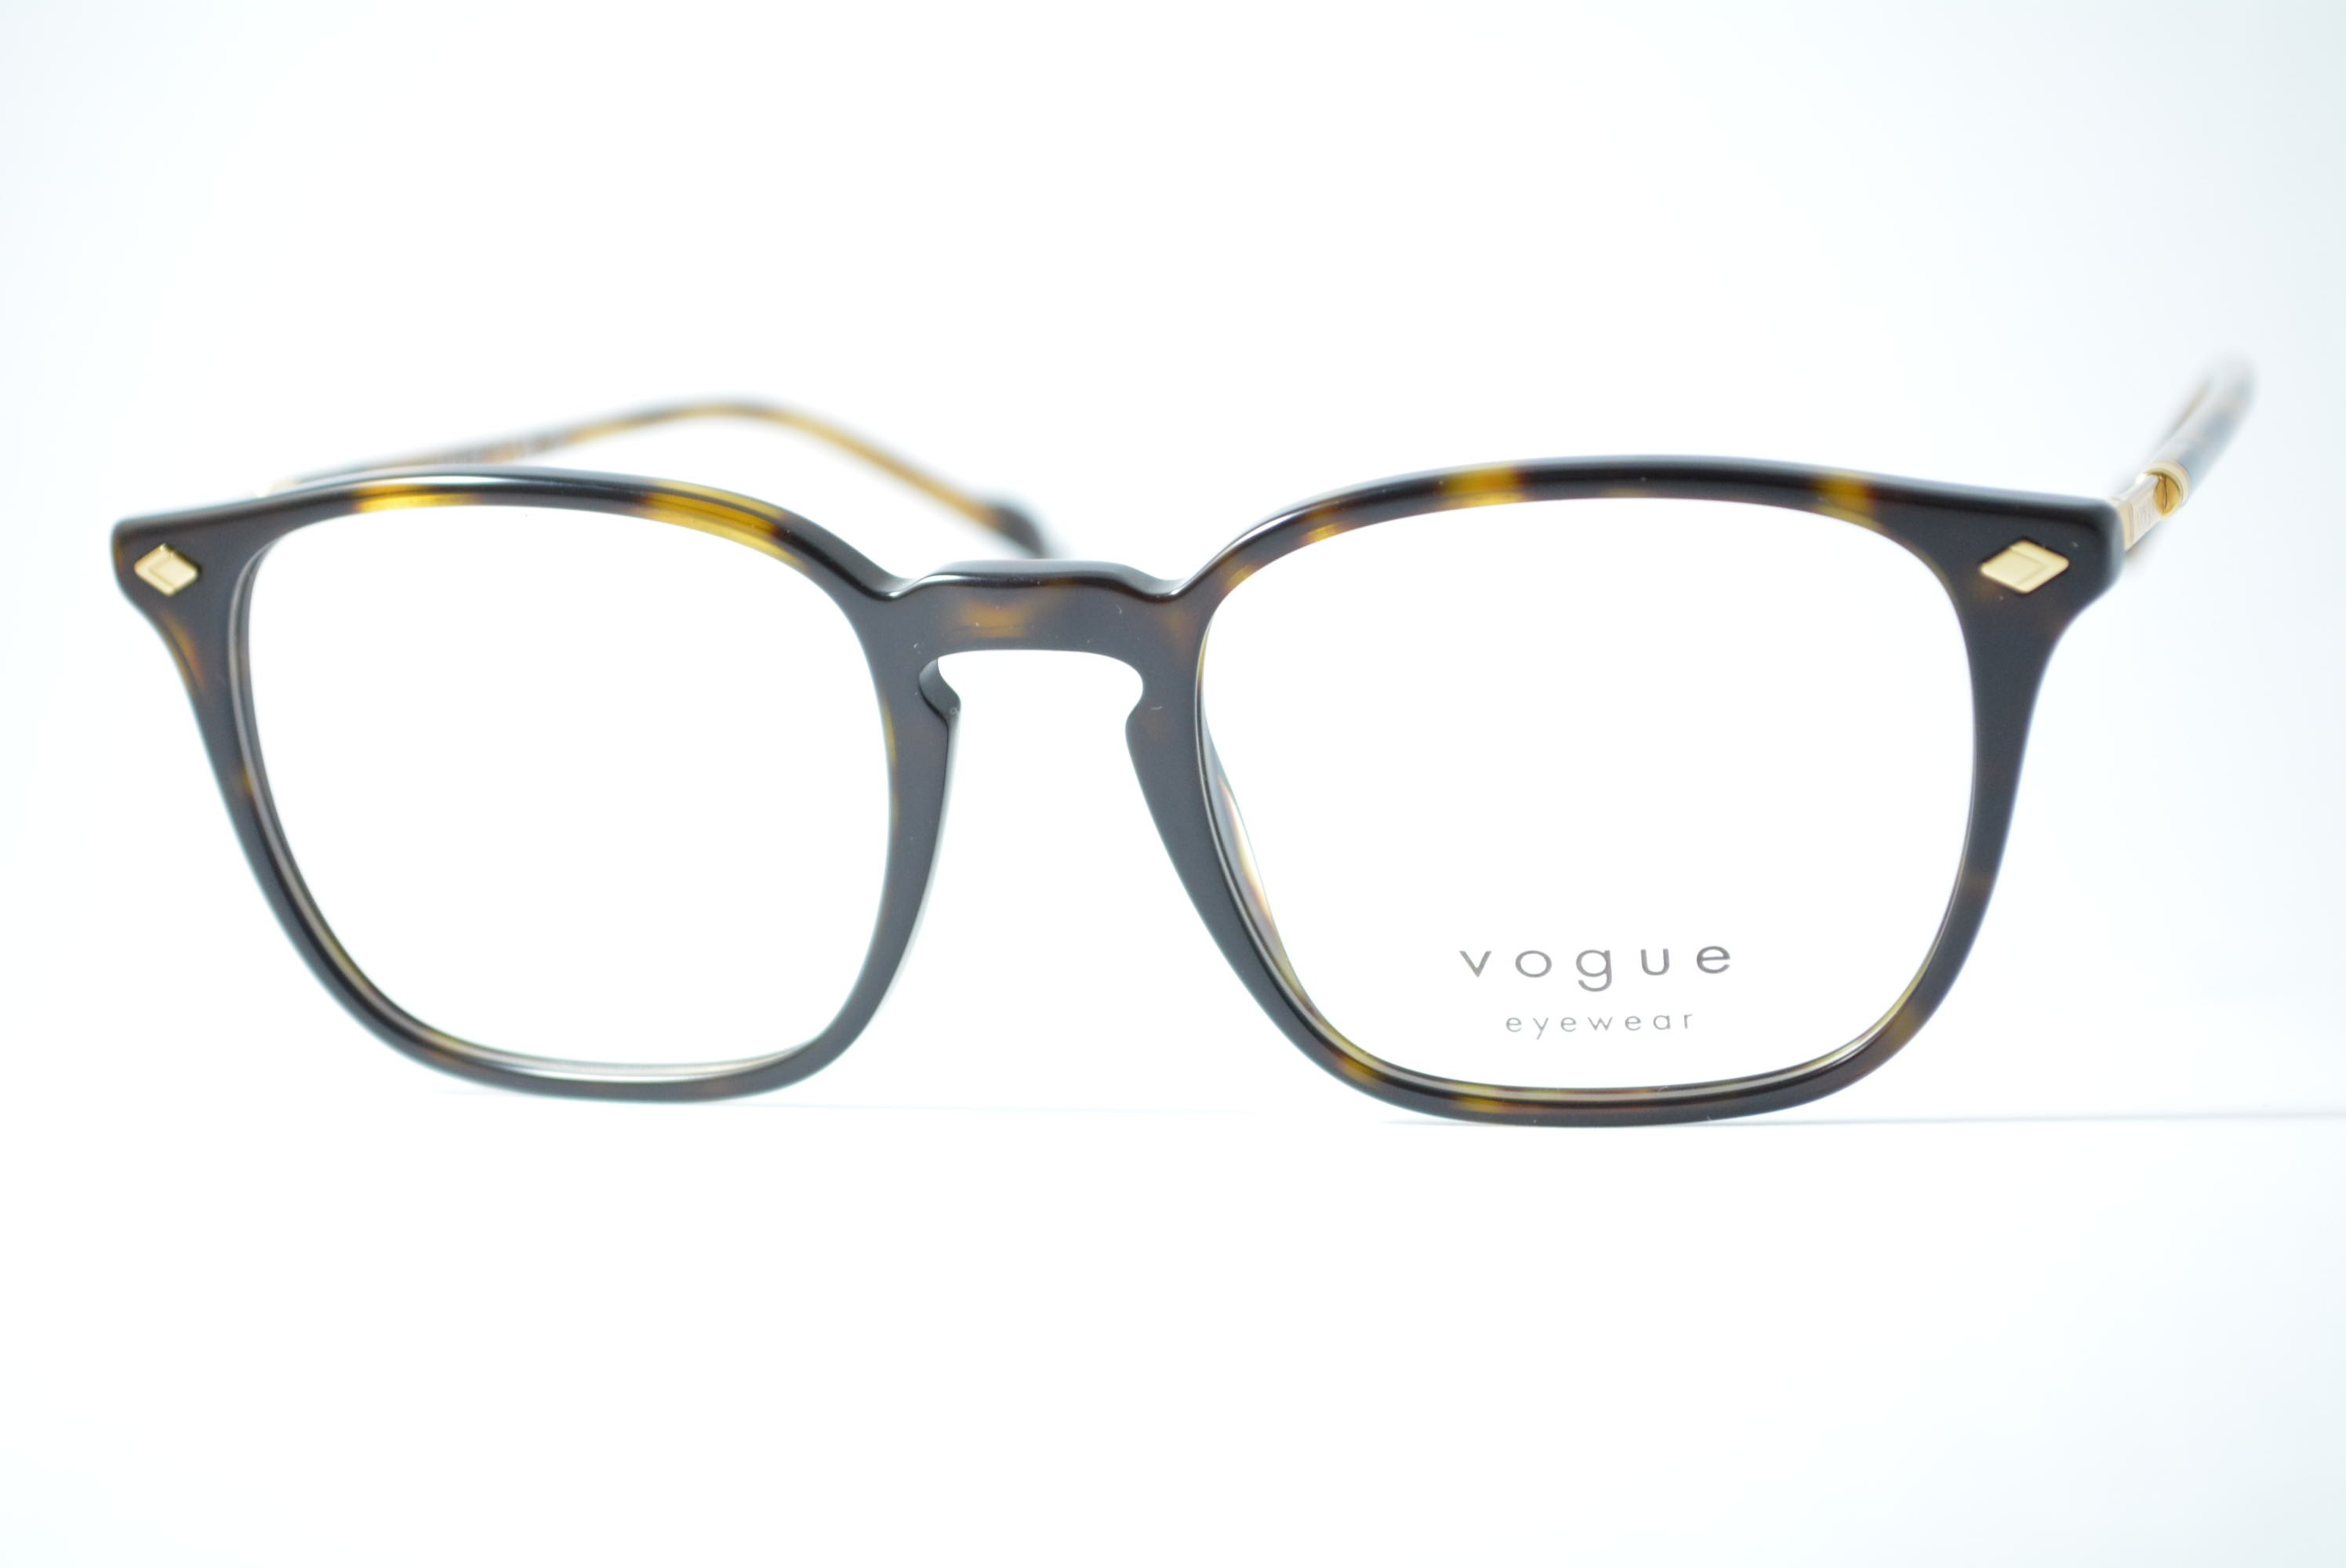 armação de óculos Vogue mod vo5433 w656